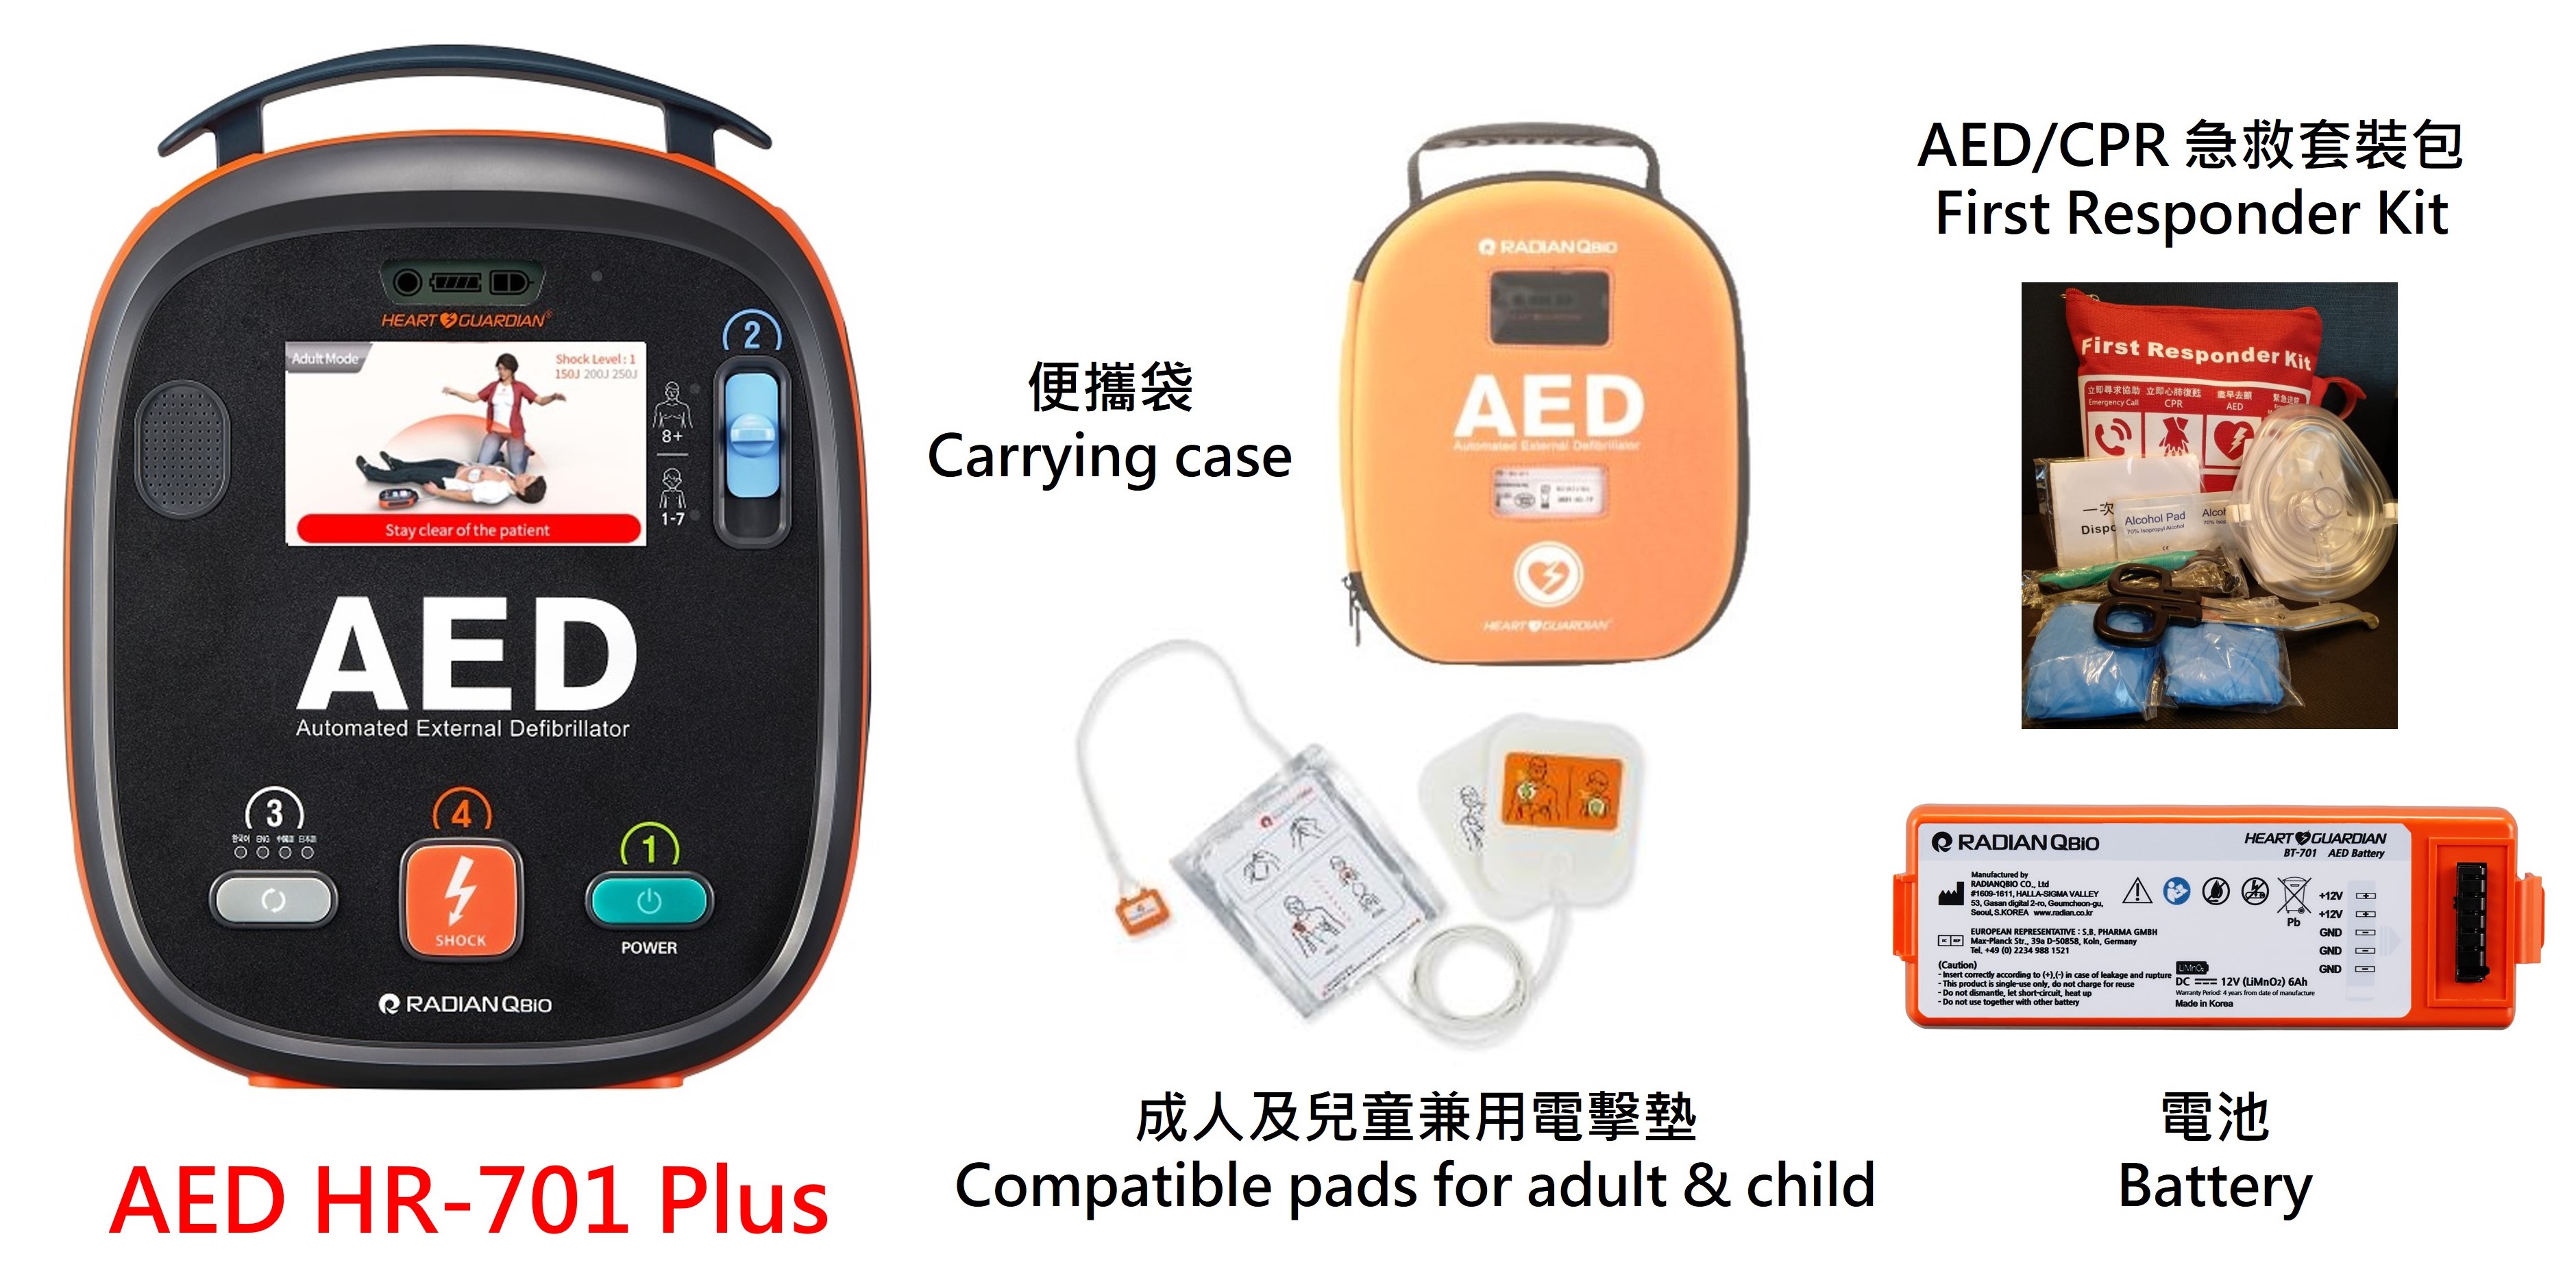 AED HR-701 Plus